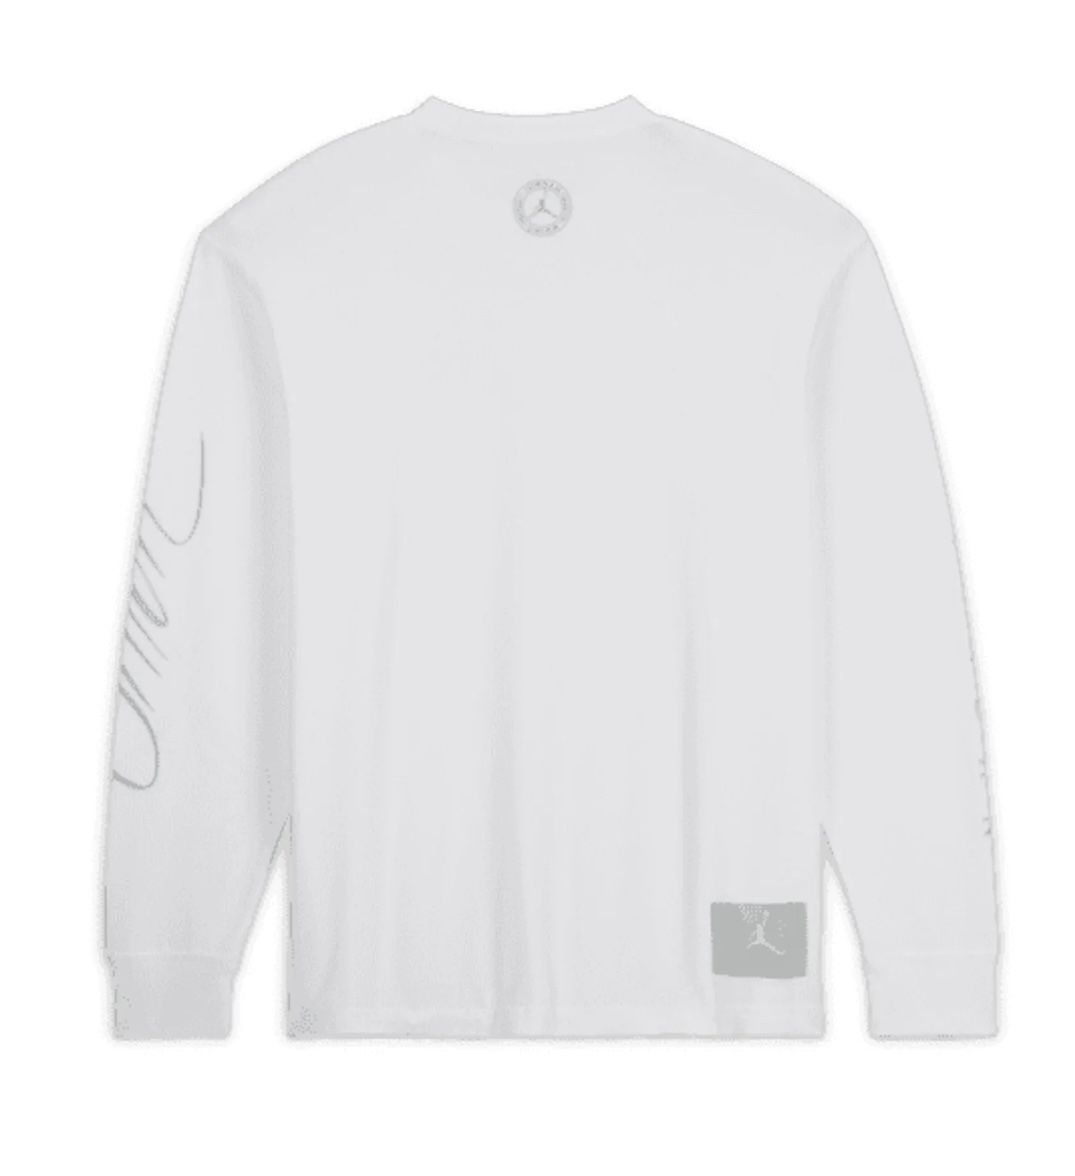 ジョーダン x ユニオン ロングスリーブ Tシャツ ホワイト Mサイズ 未使用-